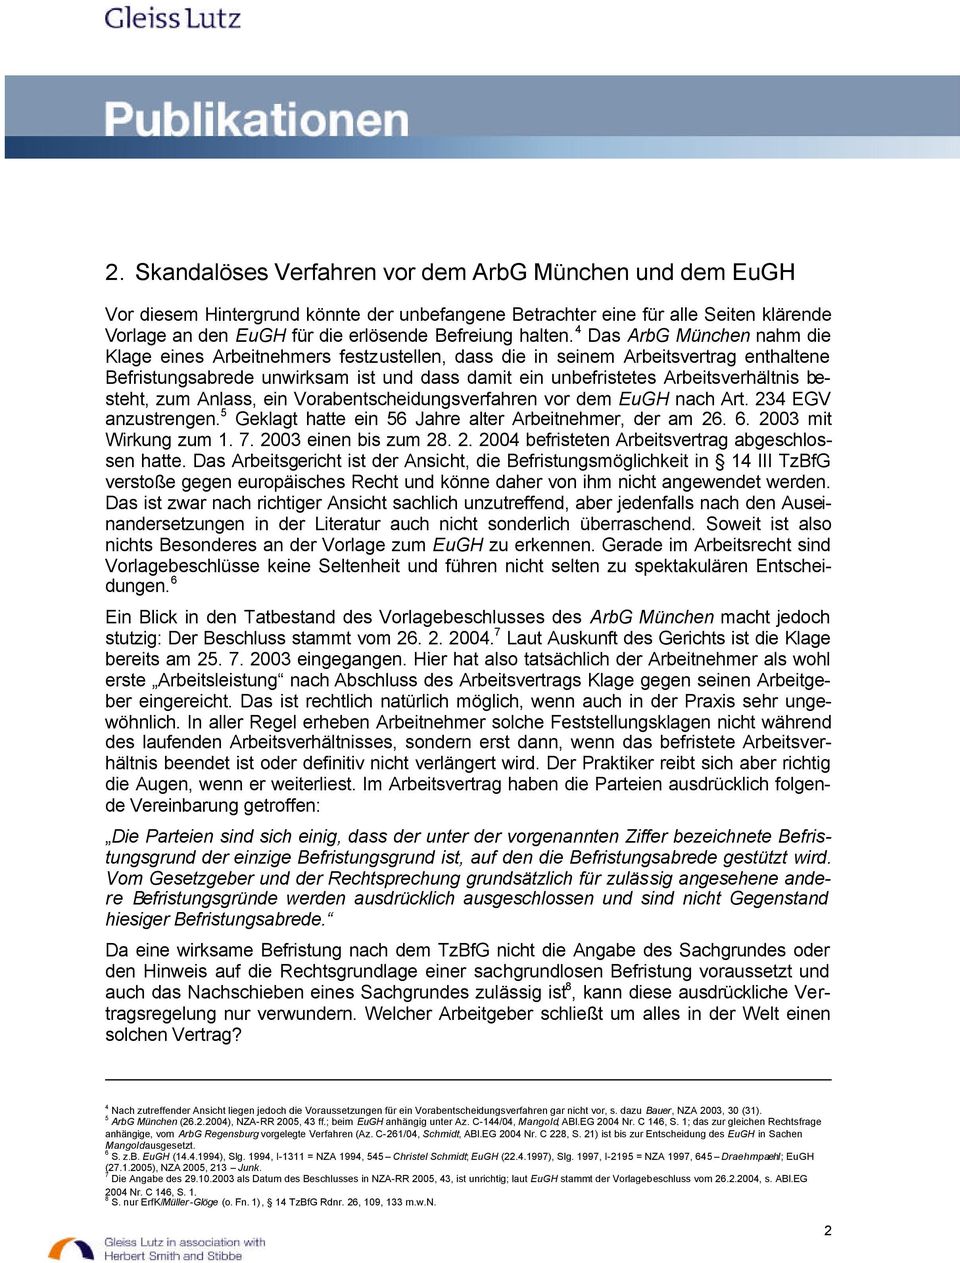 4 Das ArbG München nahm die Klage eines Arbeitnehmers festzustellen, dass die in seinem Arbeitsvertrag enthaltene Befristungsabrede unwirksam ist und dass damit ein unbefristetes Arbeitsverhältnis